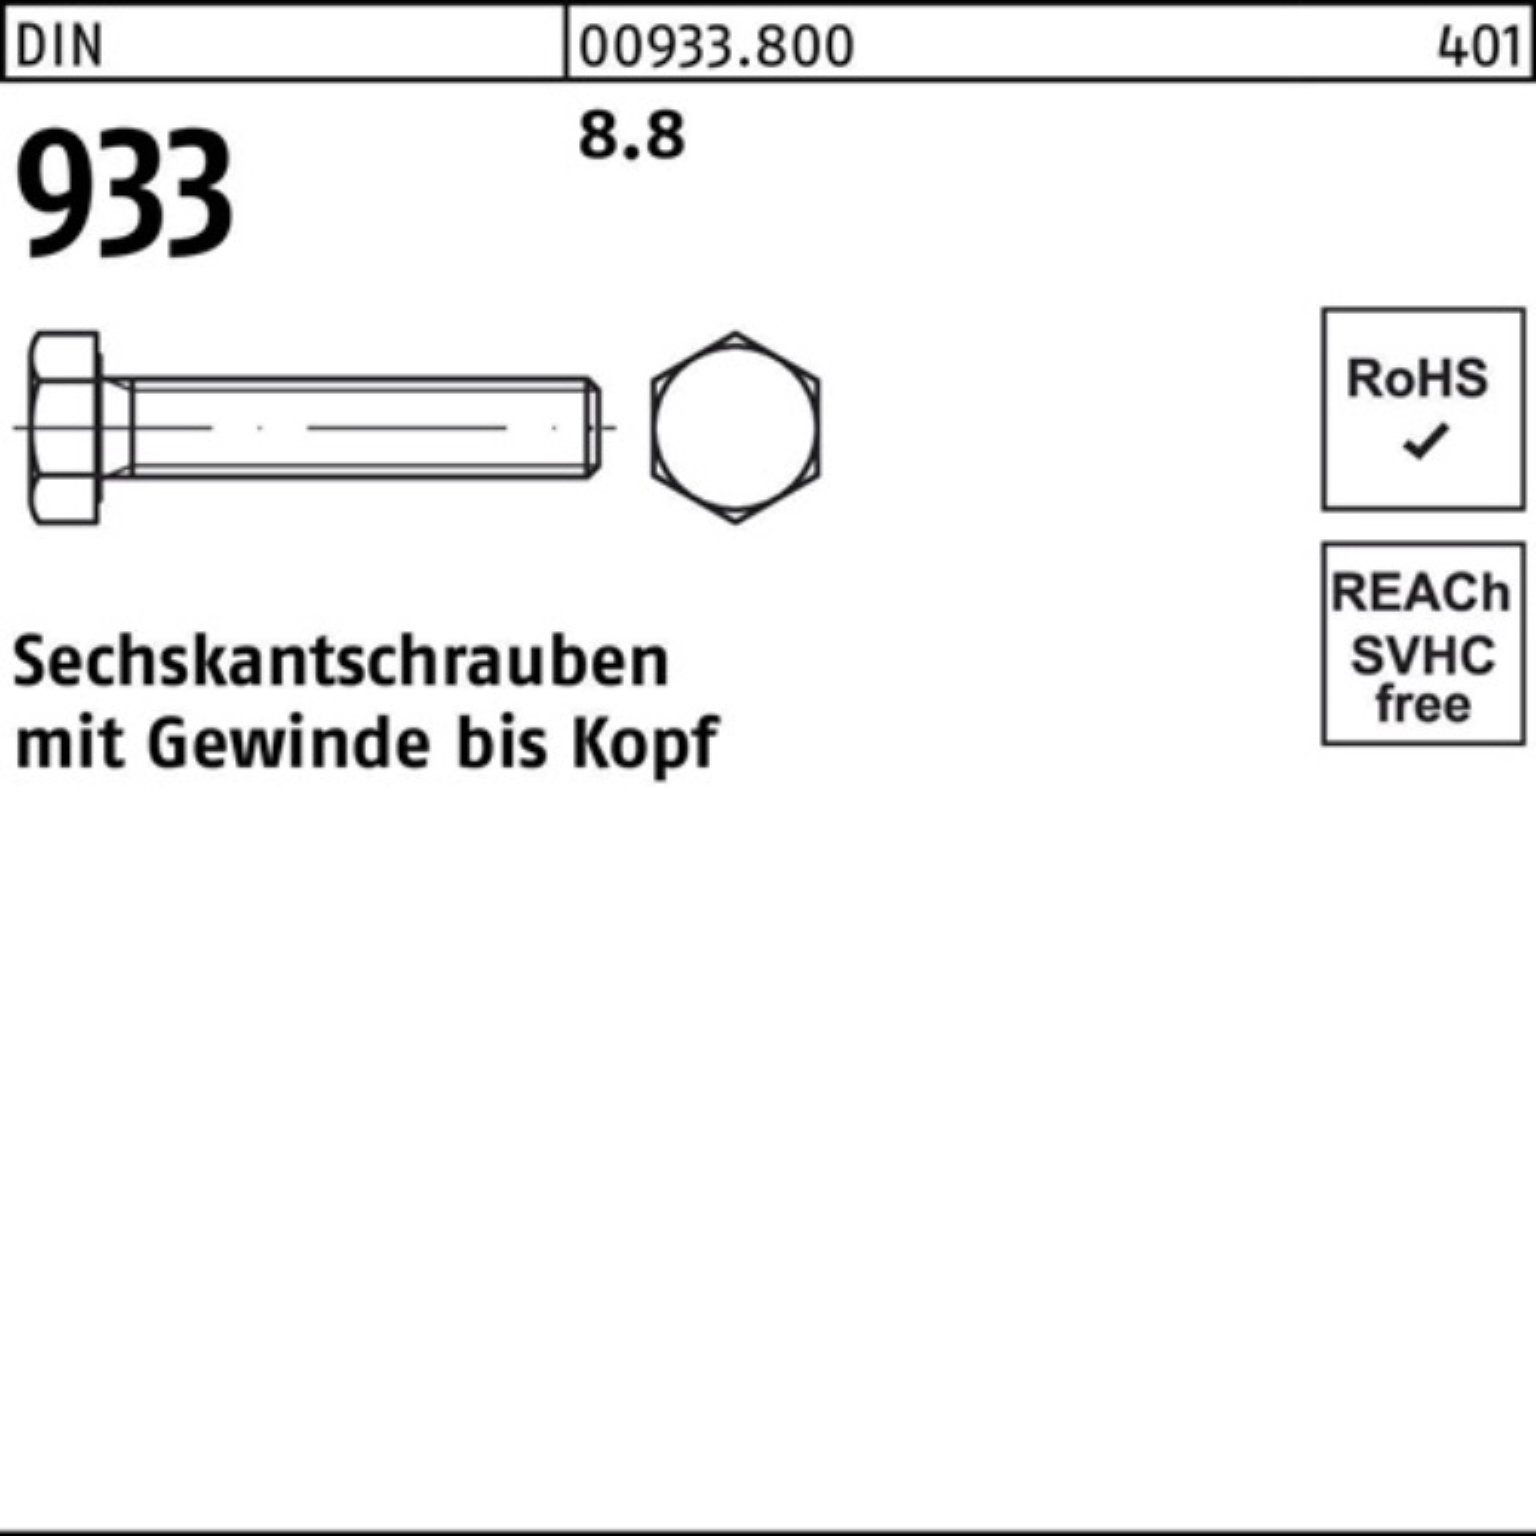 Reyher Sechskantschraube Sechskantschraube 8.8 8 M4x Stück DIN 8 933 933 100 100er Pack DIN VG